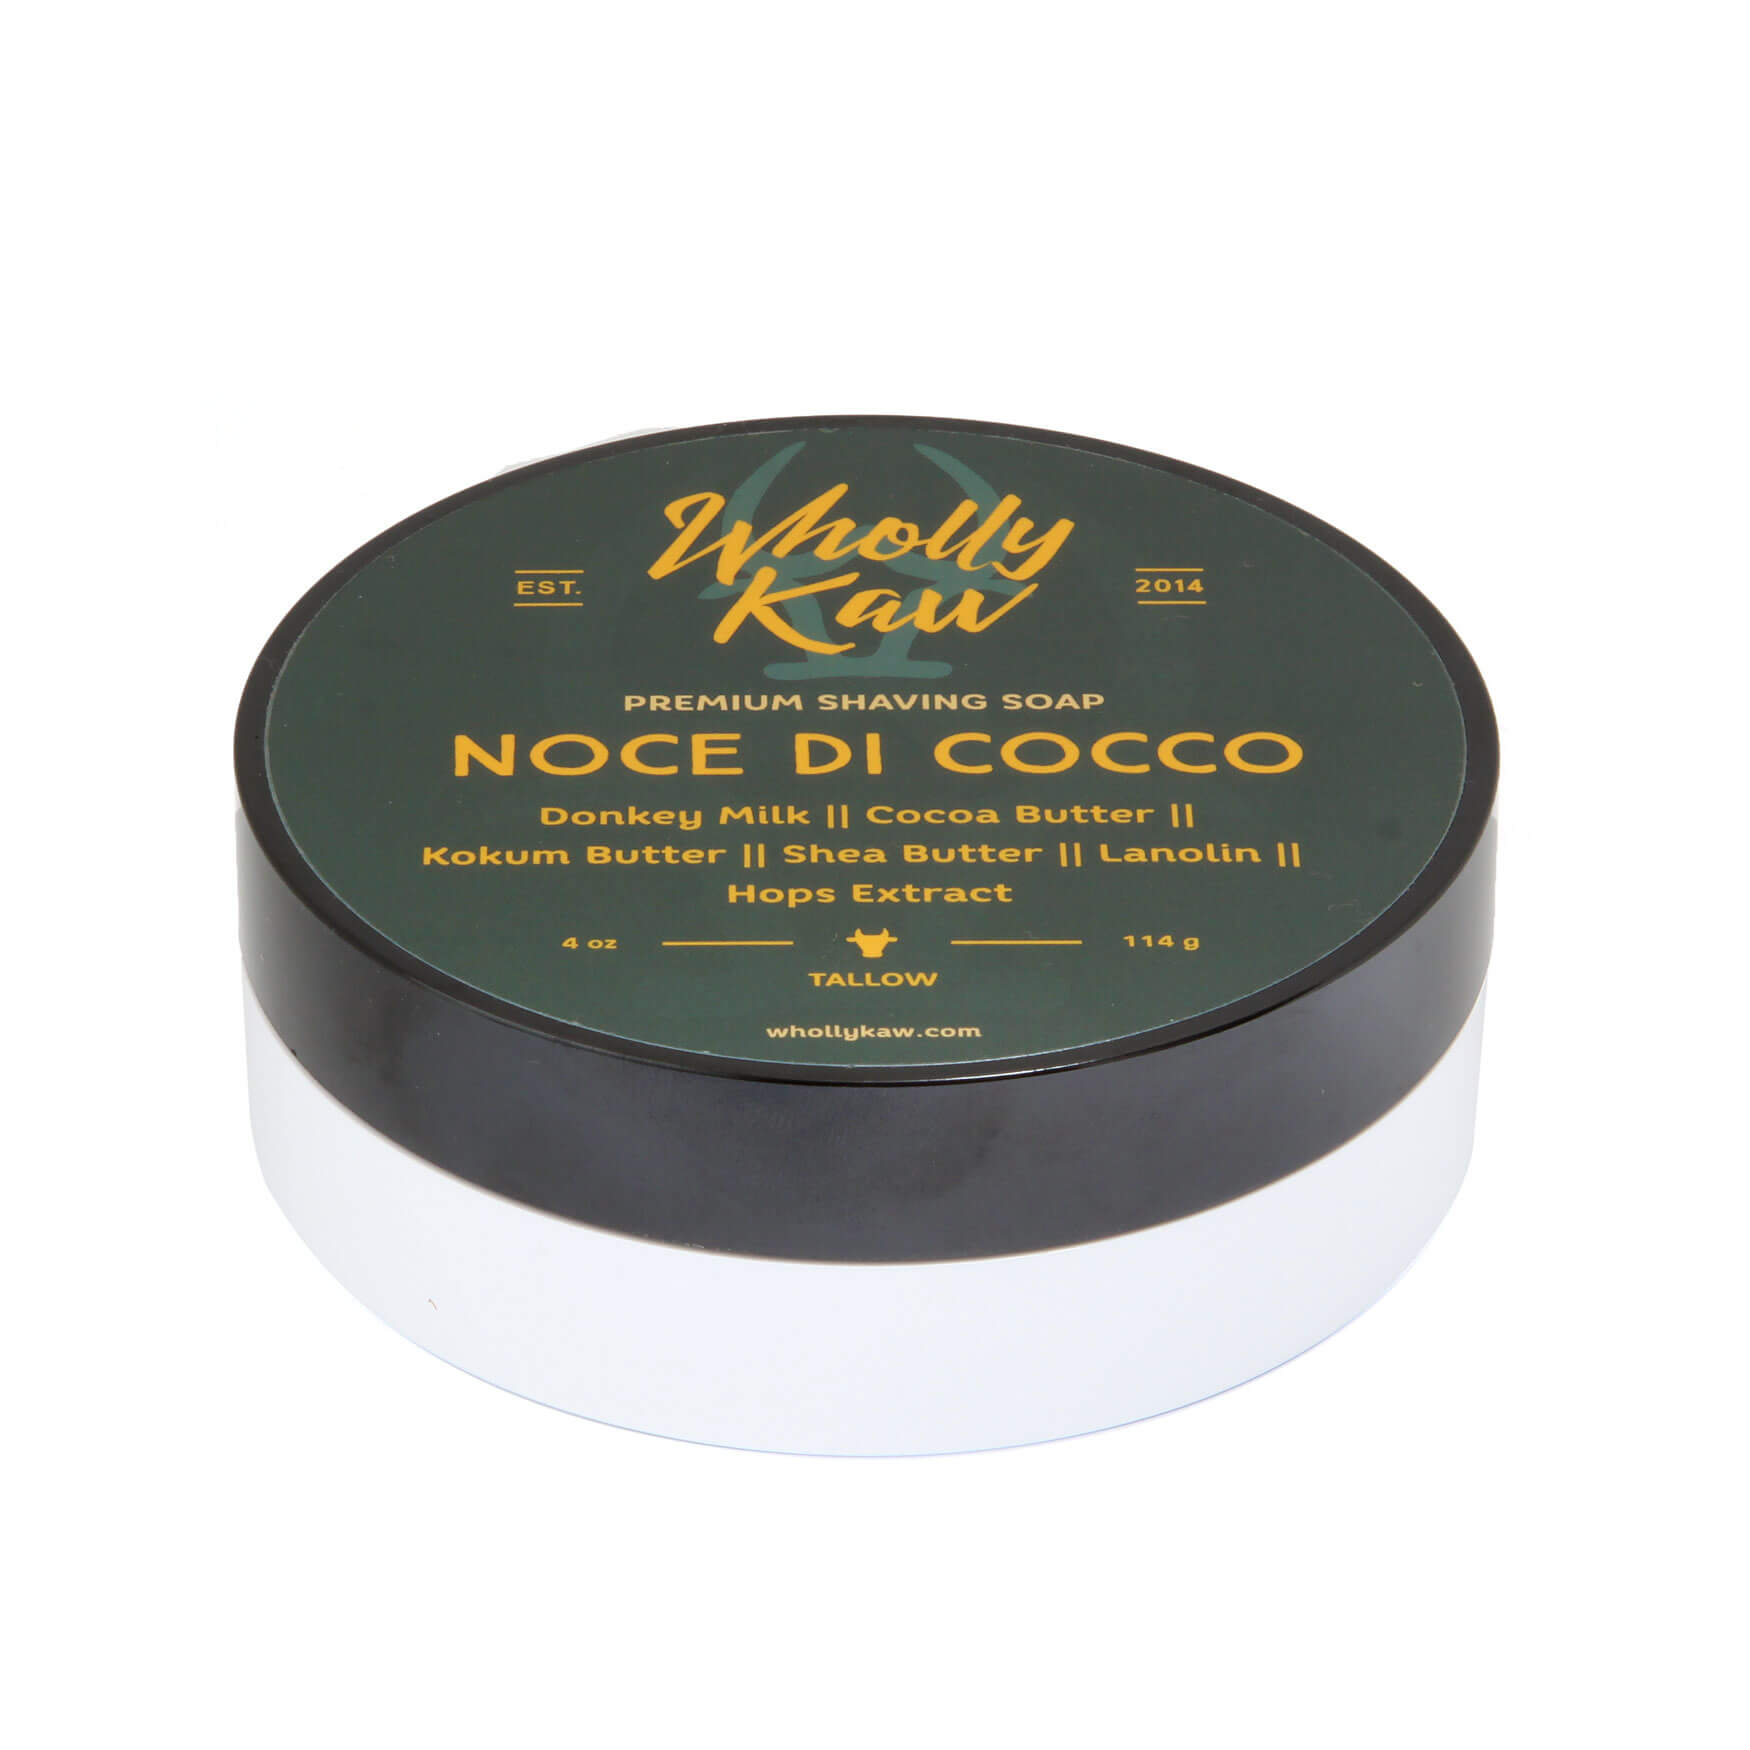 Wholly Kaw Noce Di Cocco Shaving Soap